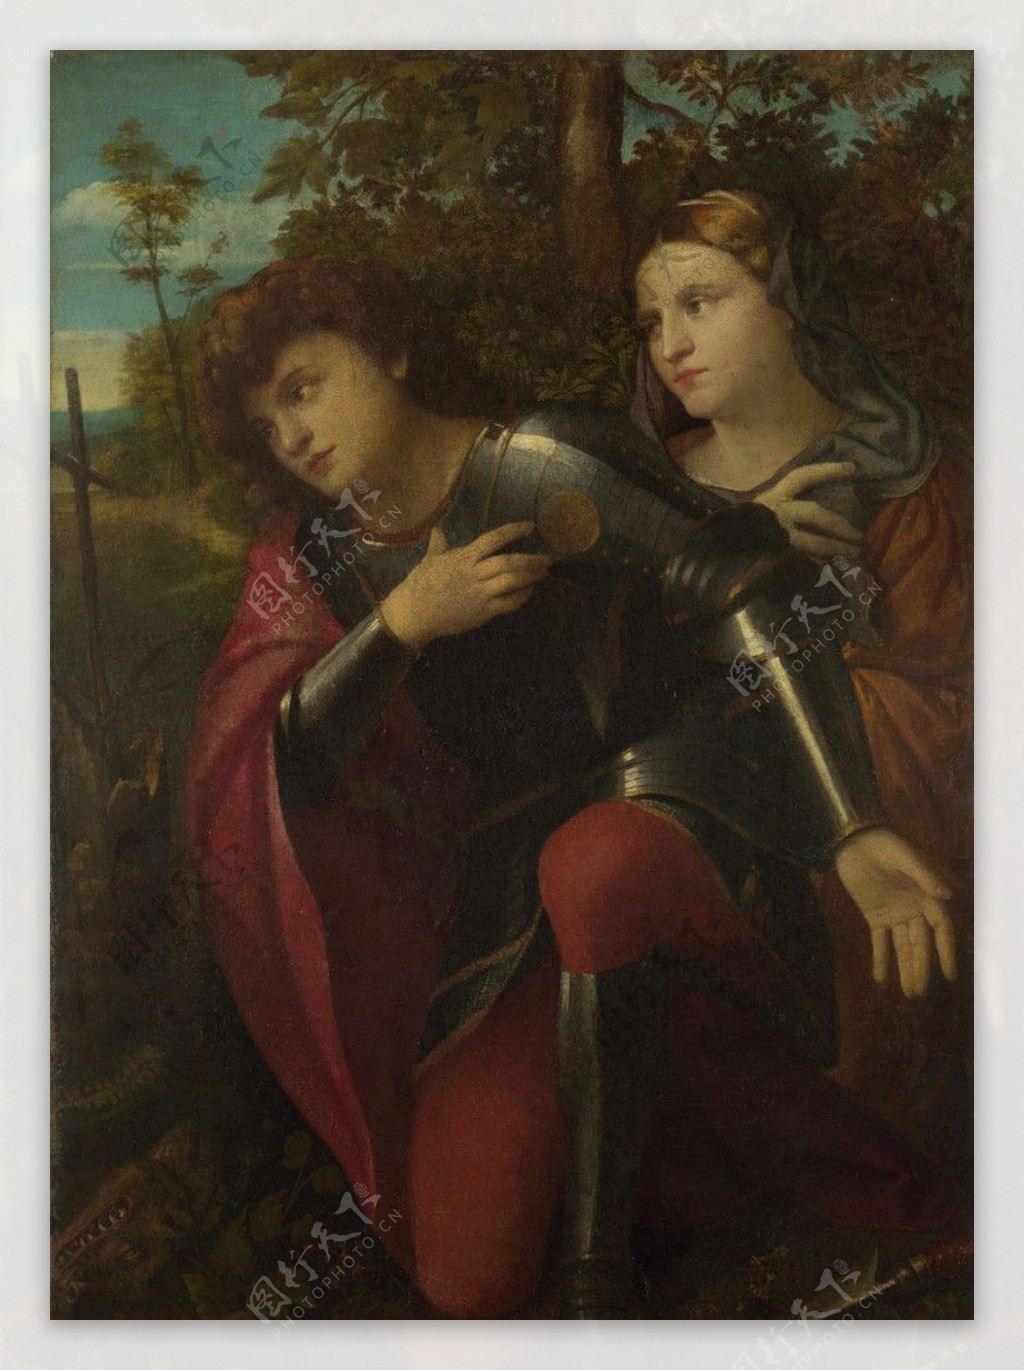 圣乔治和女性的圣人图片